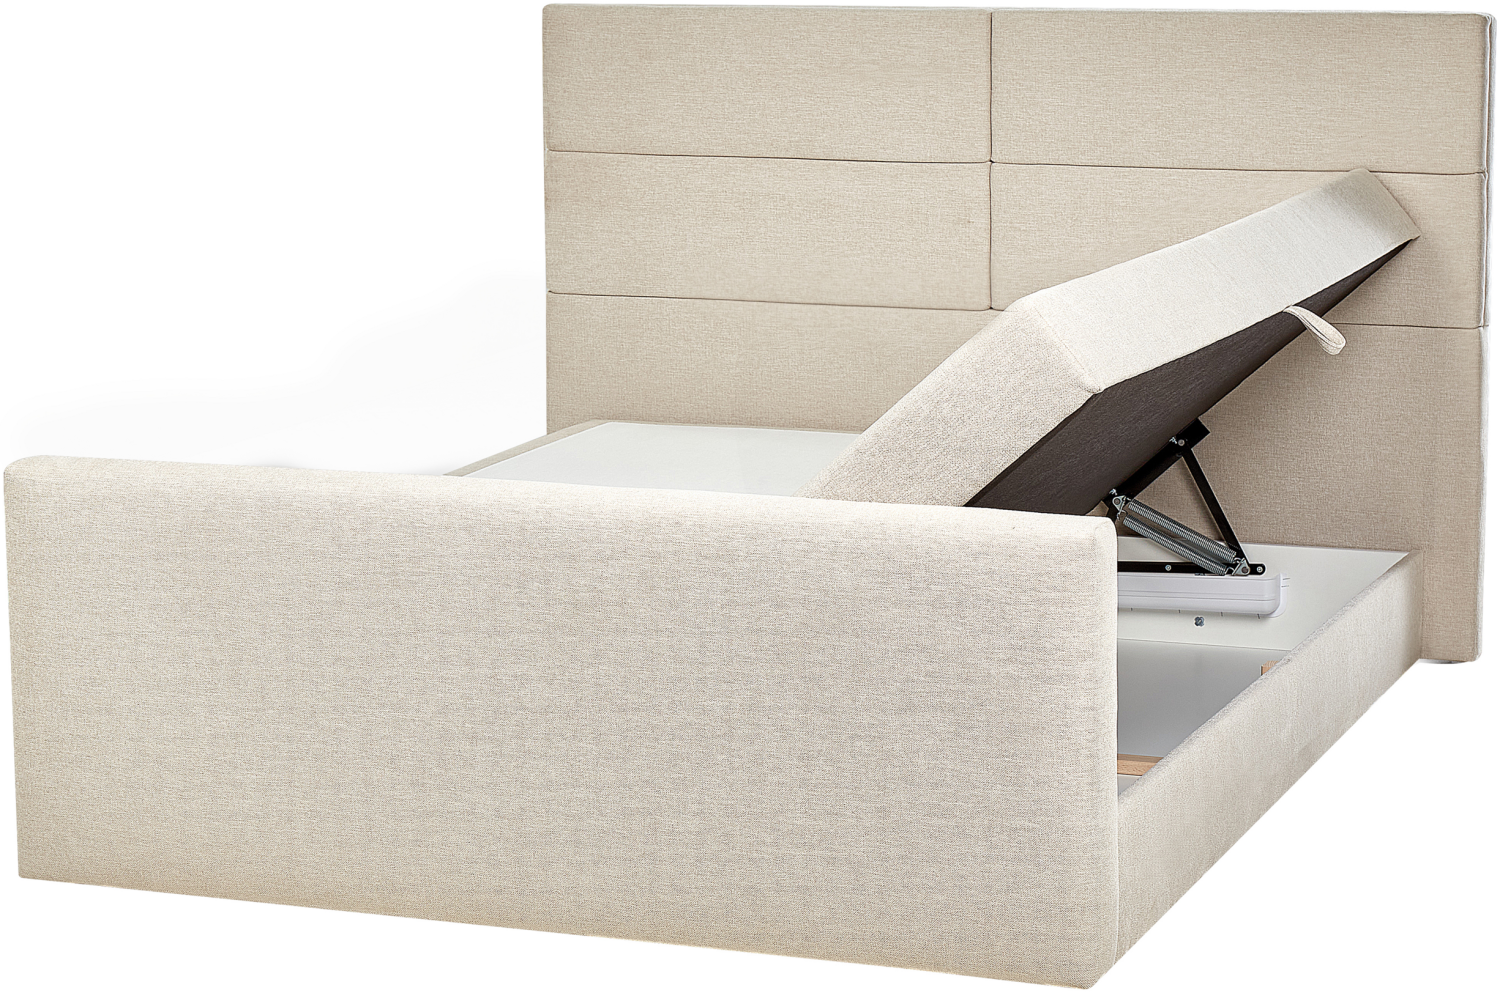 Boxspringbett Polsterbezug hellbeige mit Bettkasten hochklappbar 160 x 200 cm ARISTOCRAT Bild 1